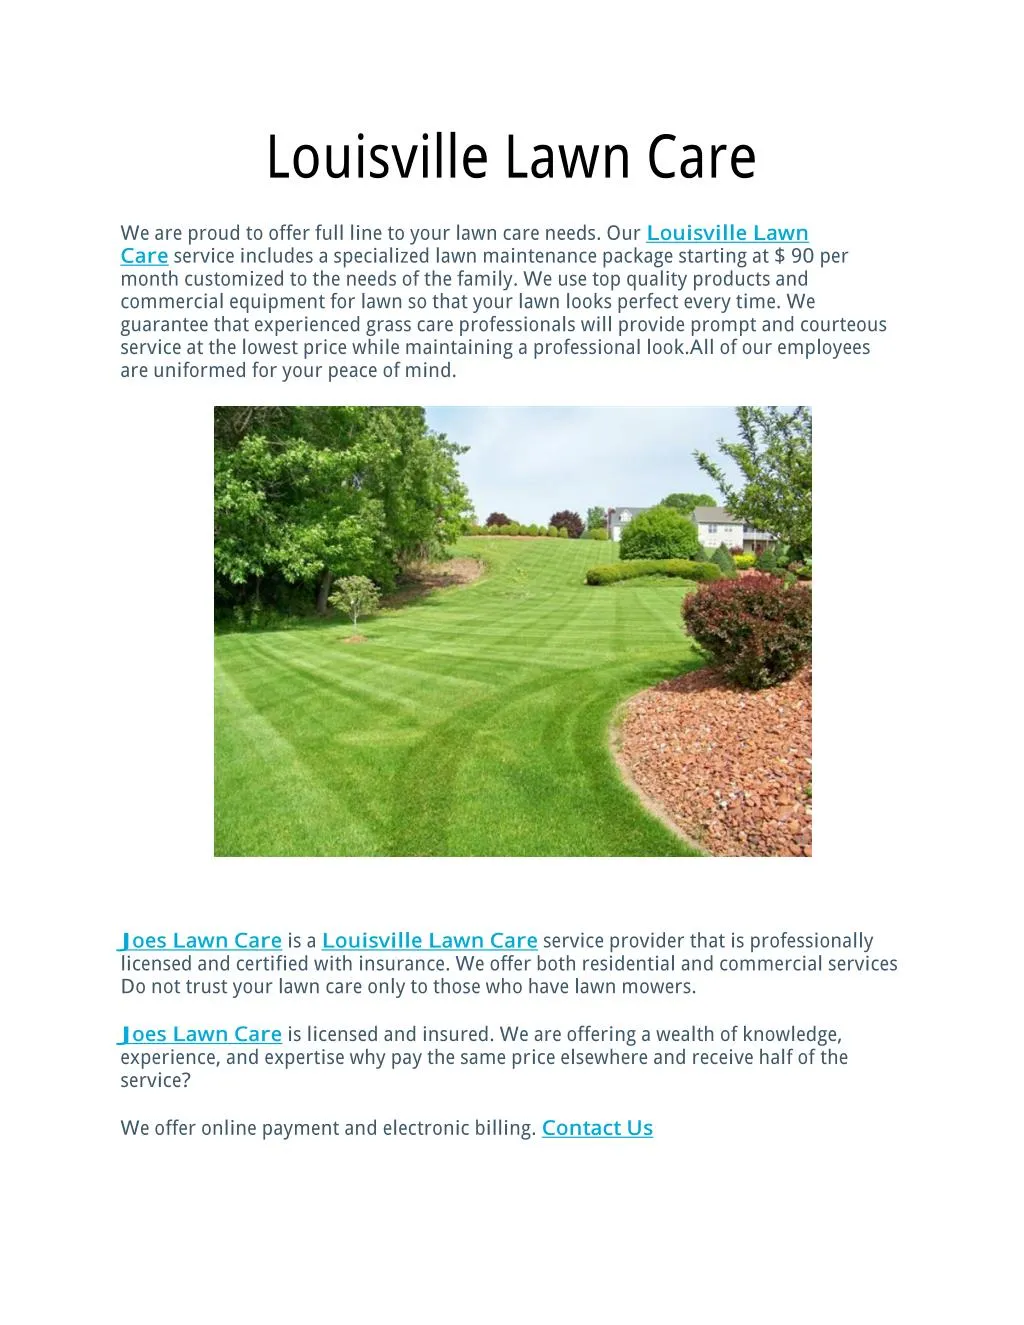 louisville lawn care